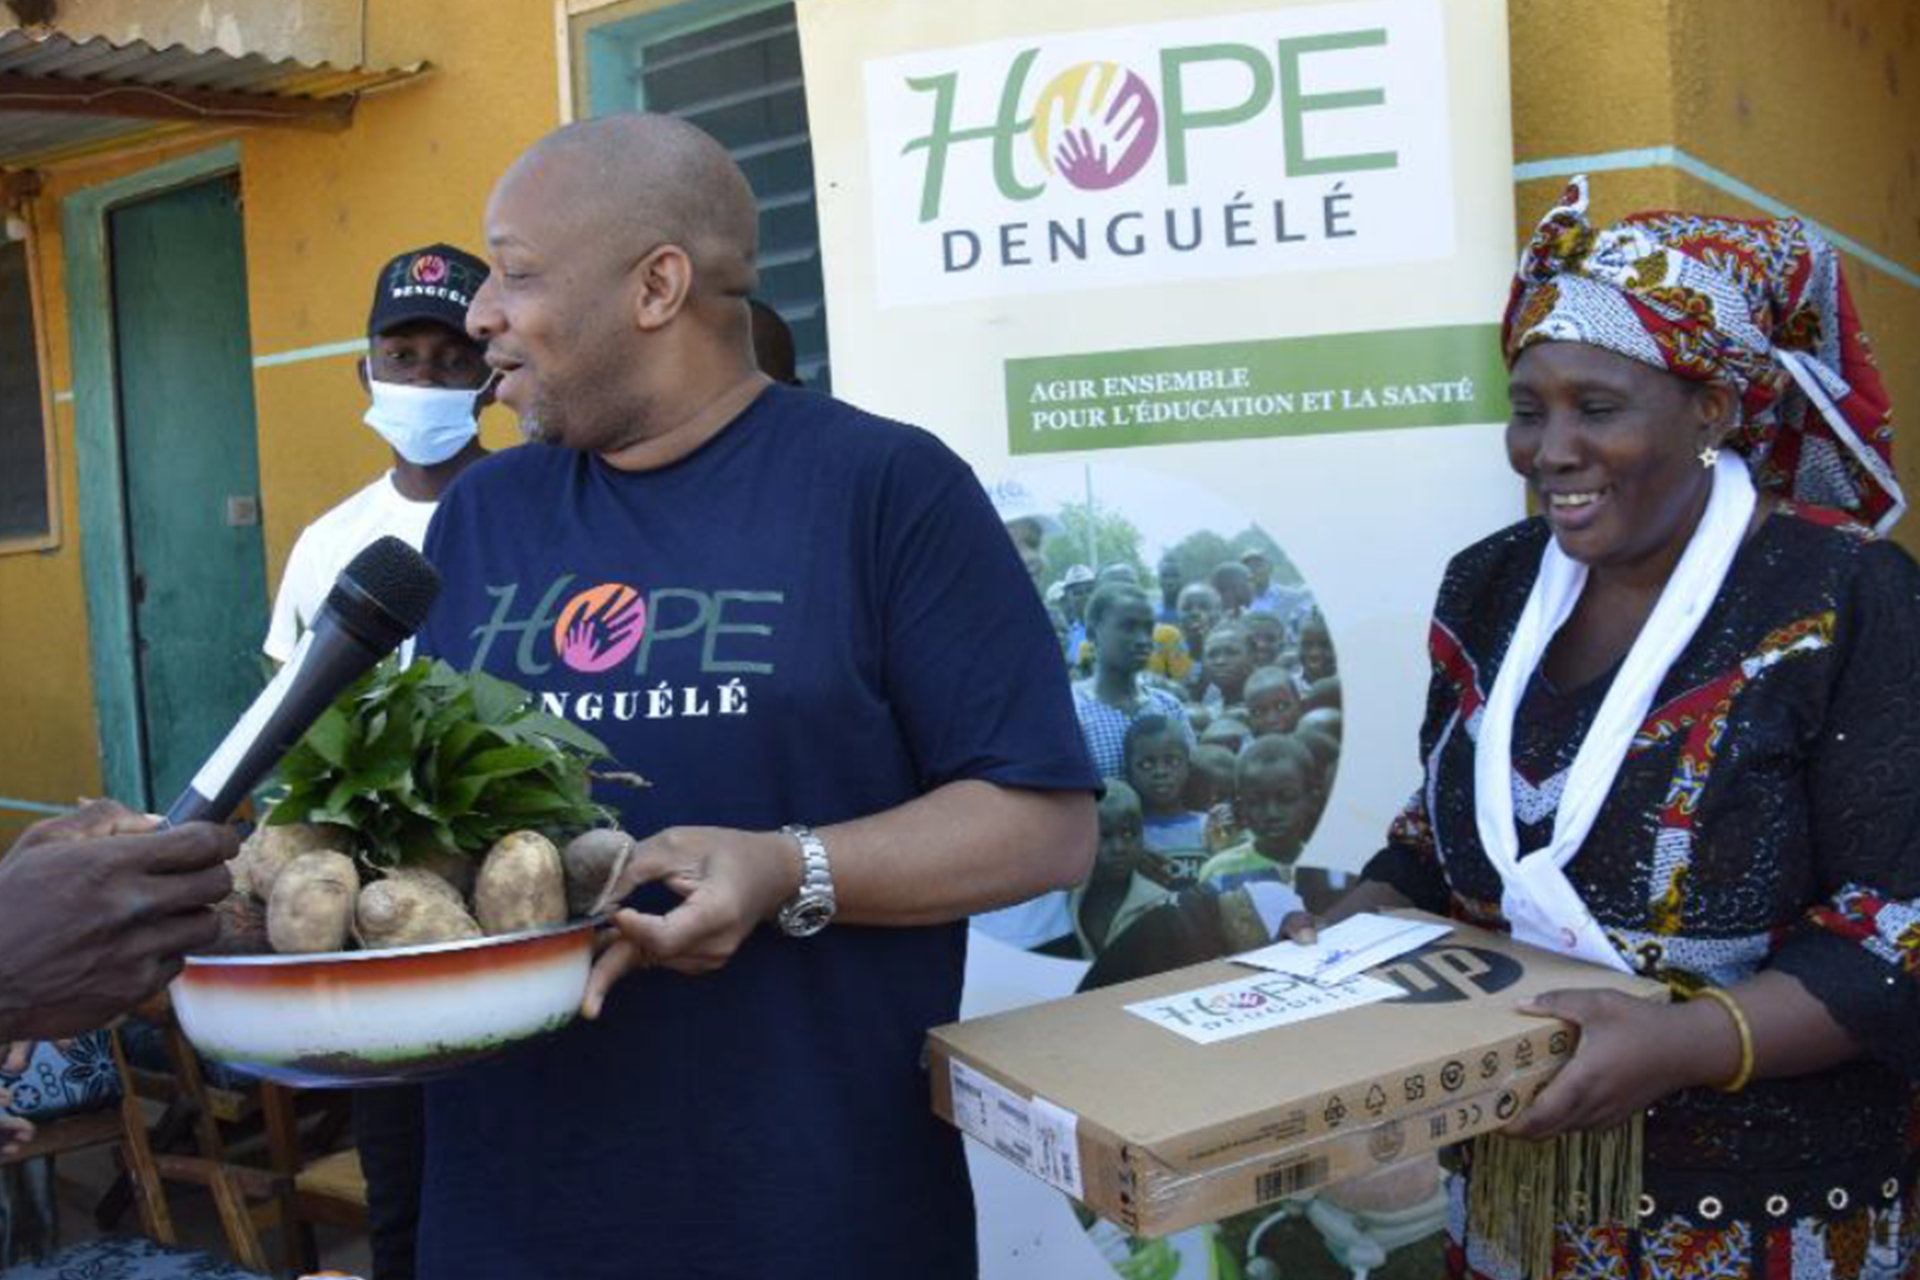 Les femmes du quartier Habitat remercient Hope Denguélé